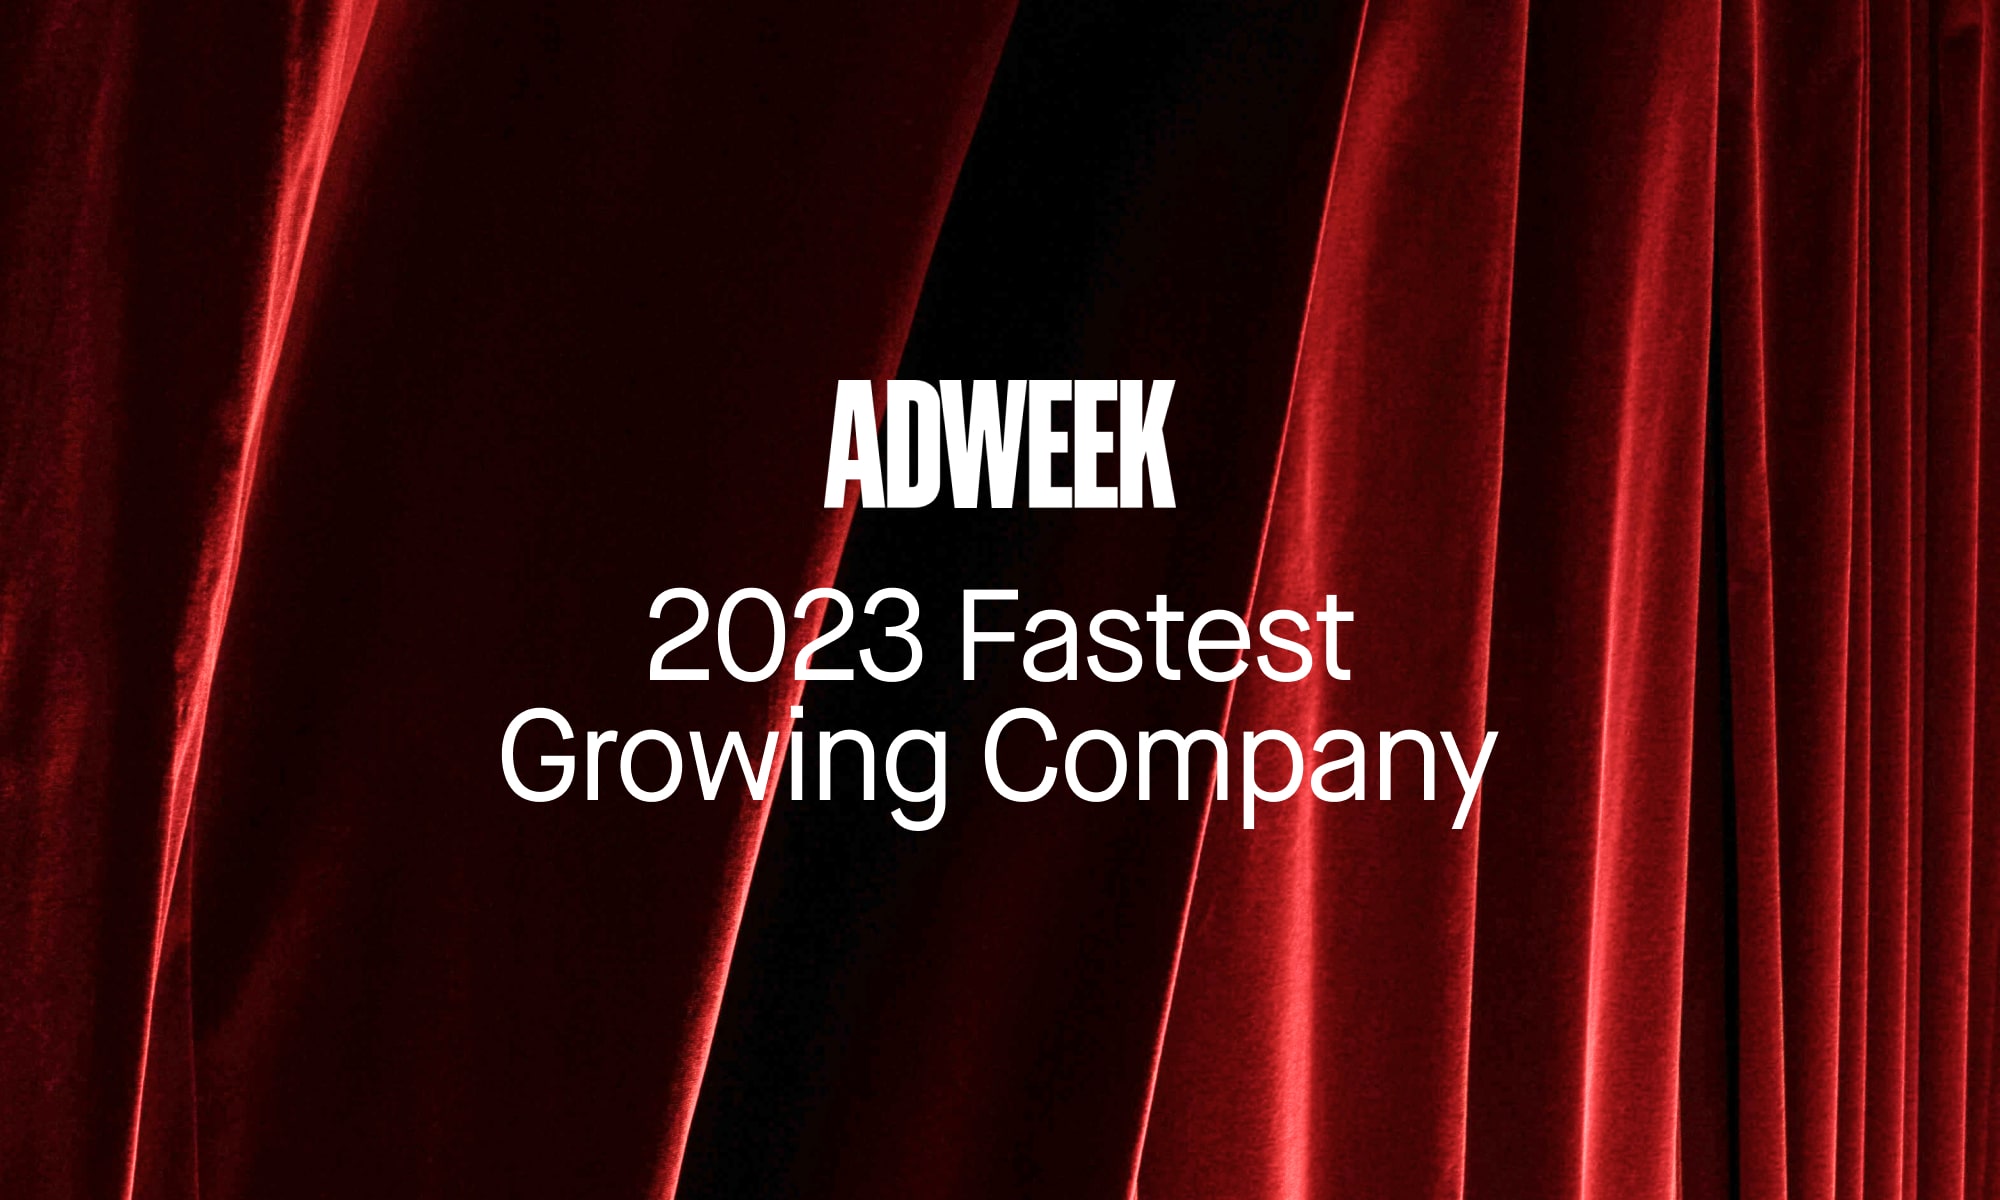 DEPT® gehört zu Adweek’s Fastest Growing Agencies in 2023